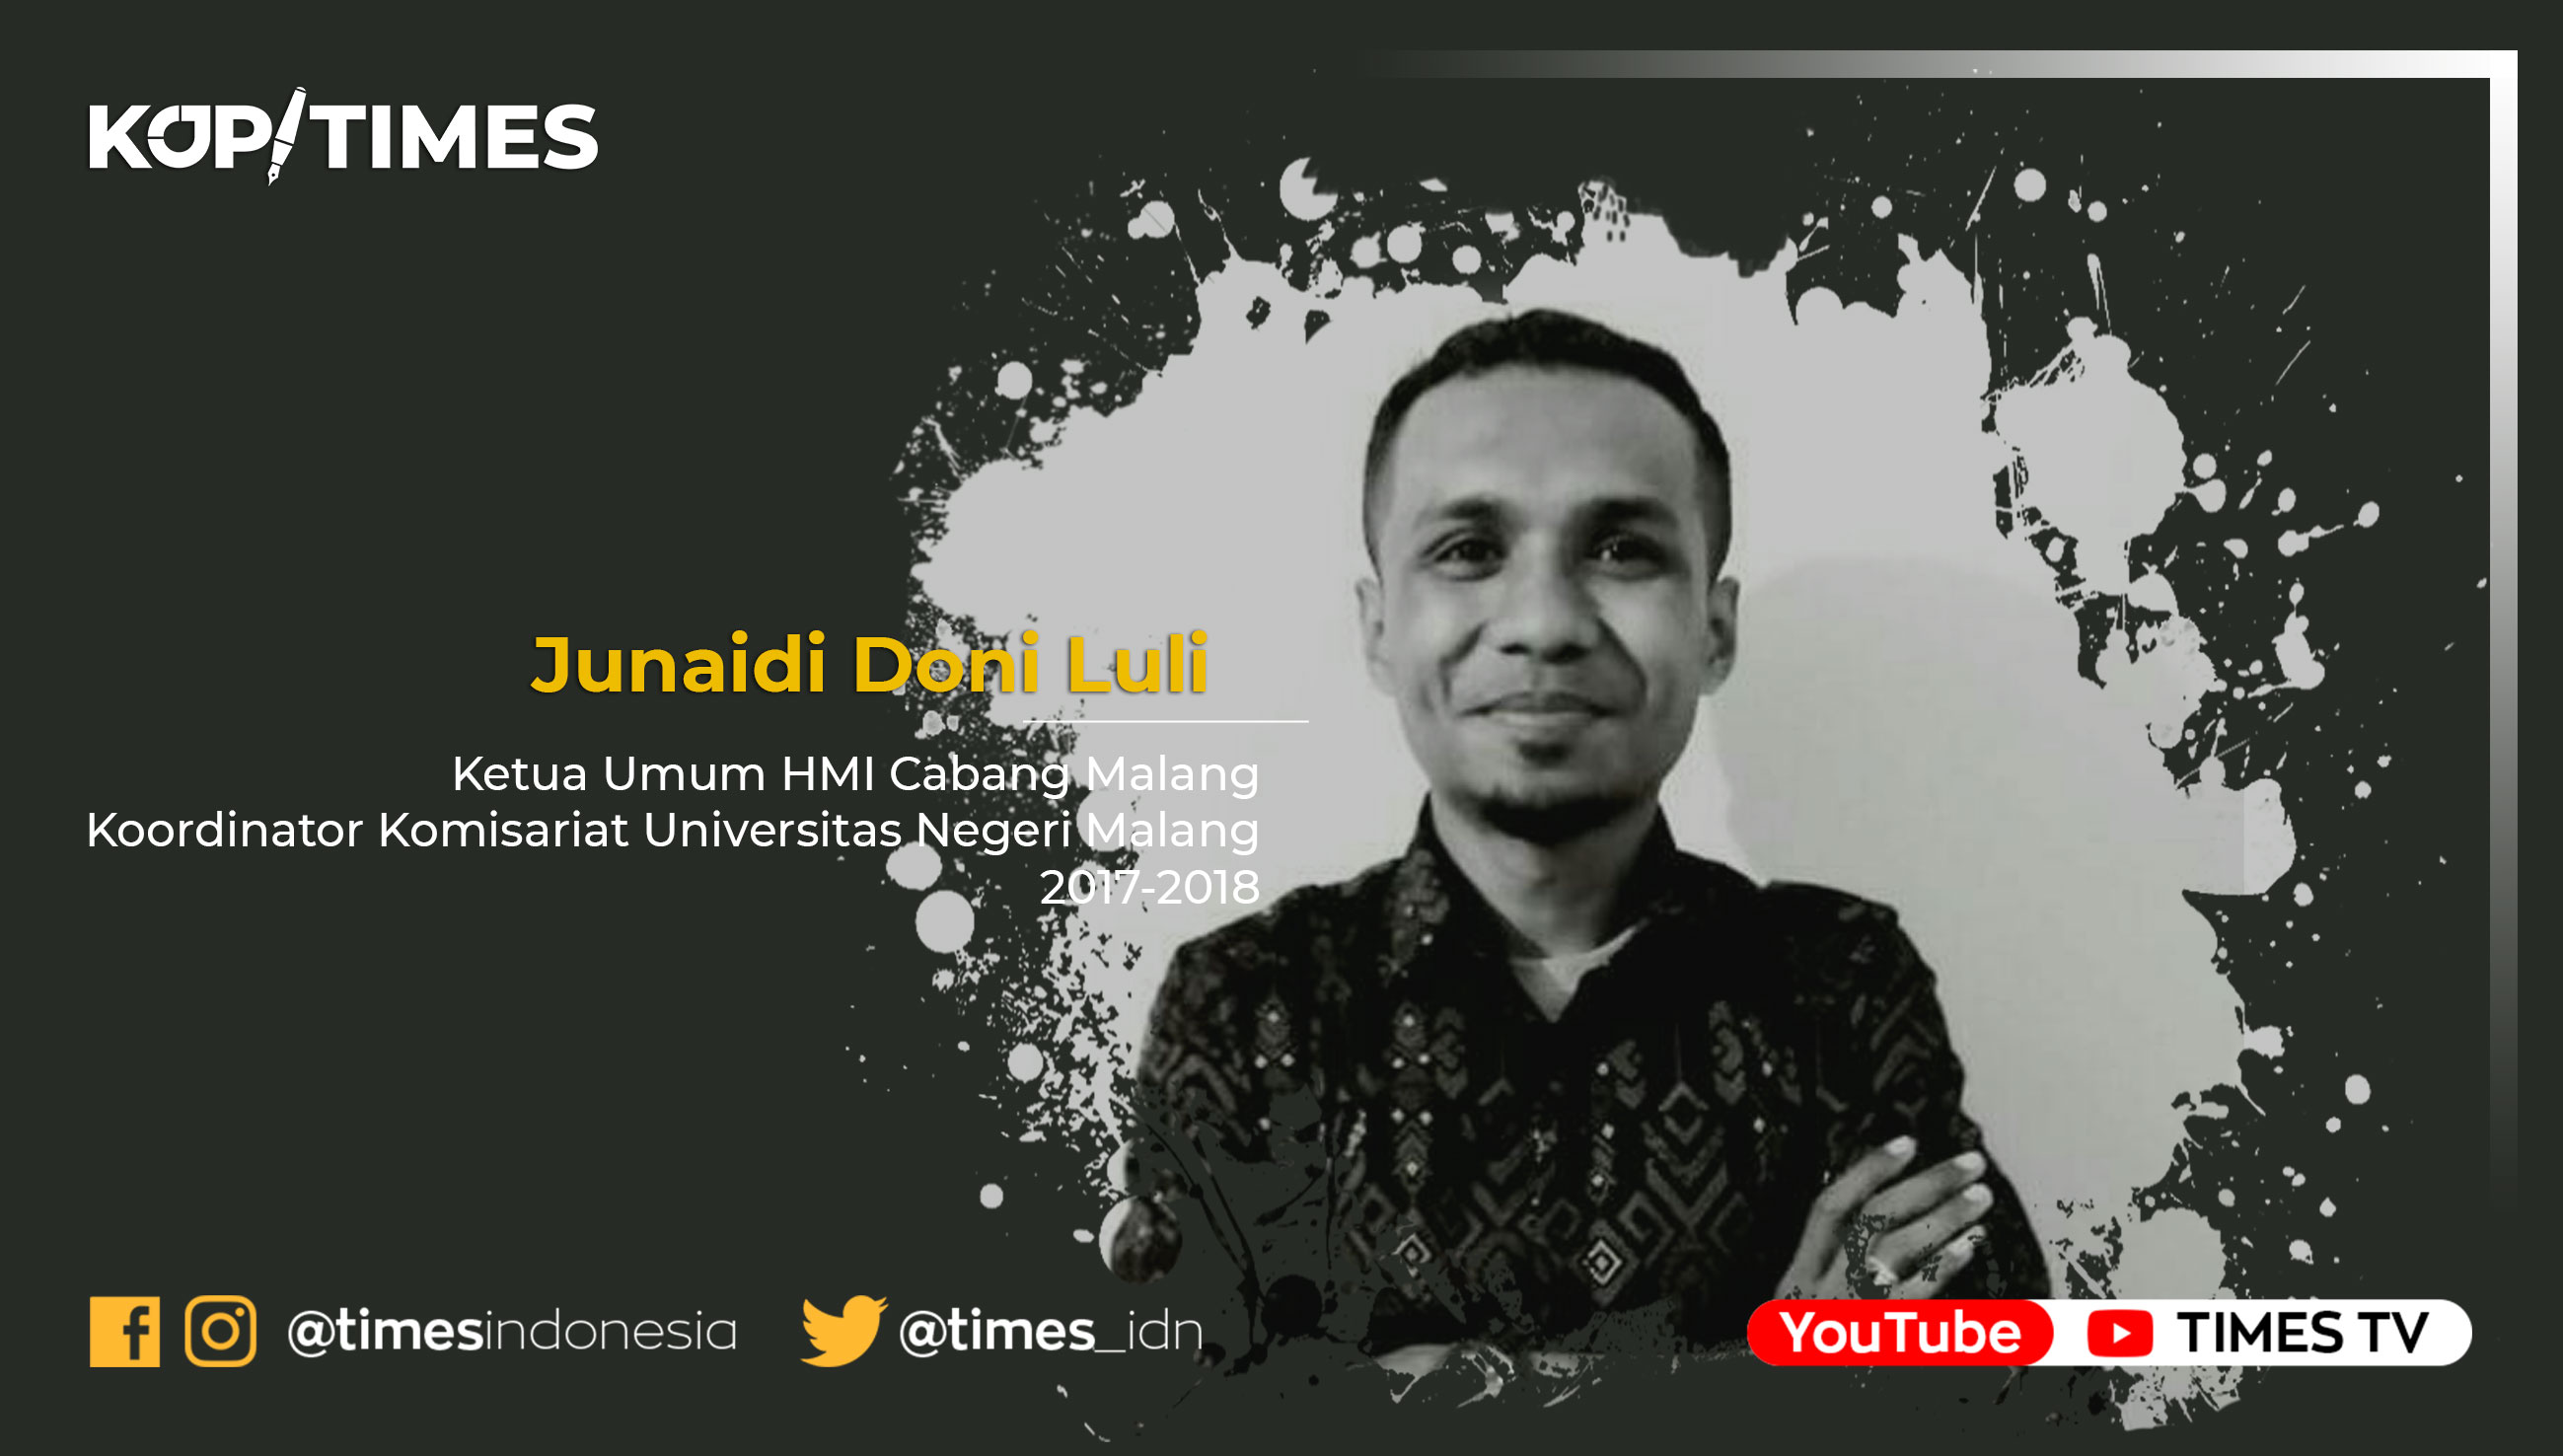 Junaidi Doni Luli, Ketua Umum HMI Cabang Malang Koordinator Komisariat Universitas Negeri Malang 2017-2018.